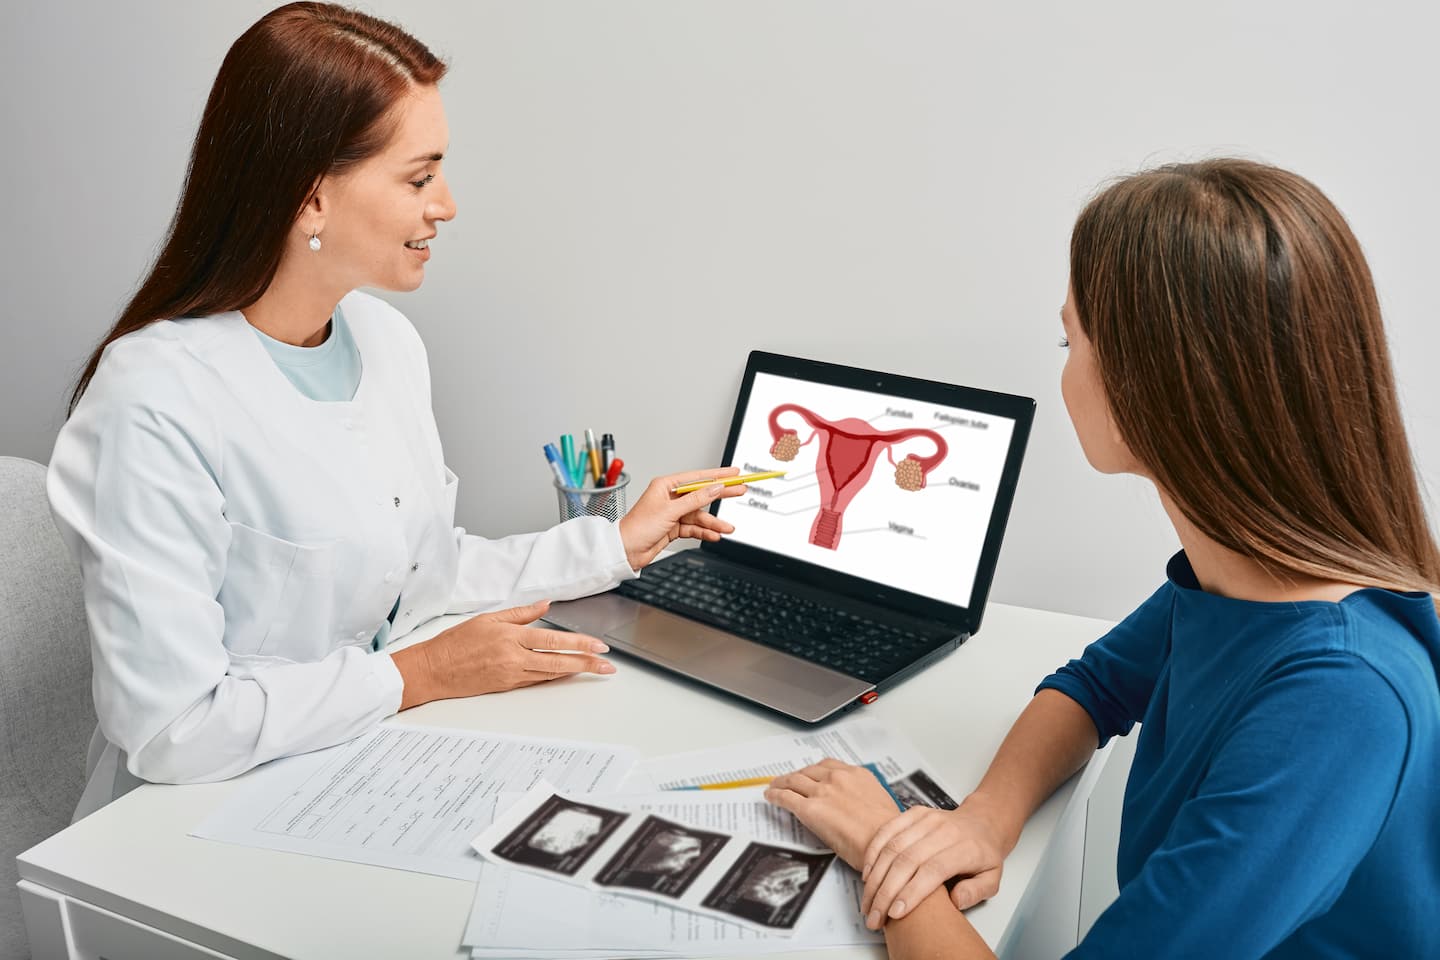 Behandlungsverfahren für das polyzystische ovarialsyndrom in der türkei